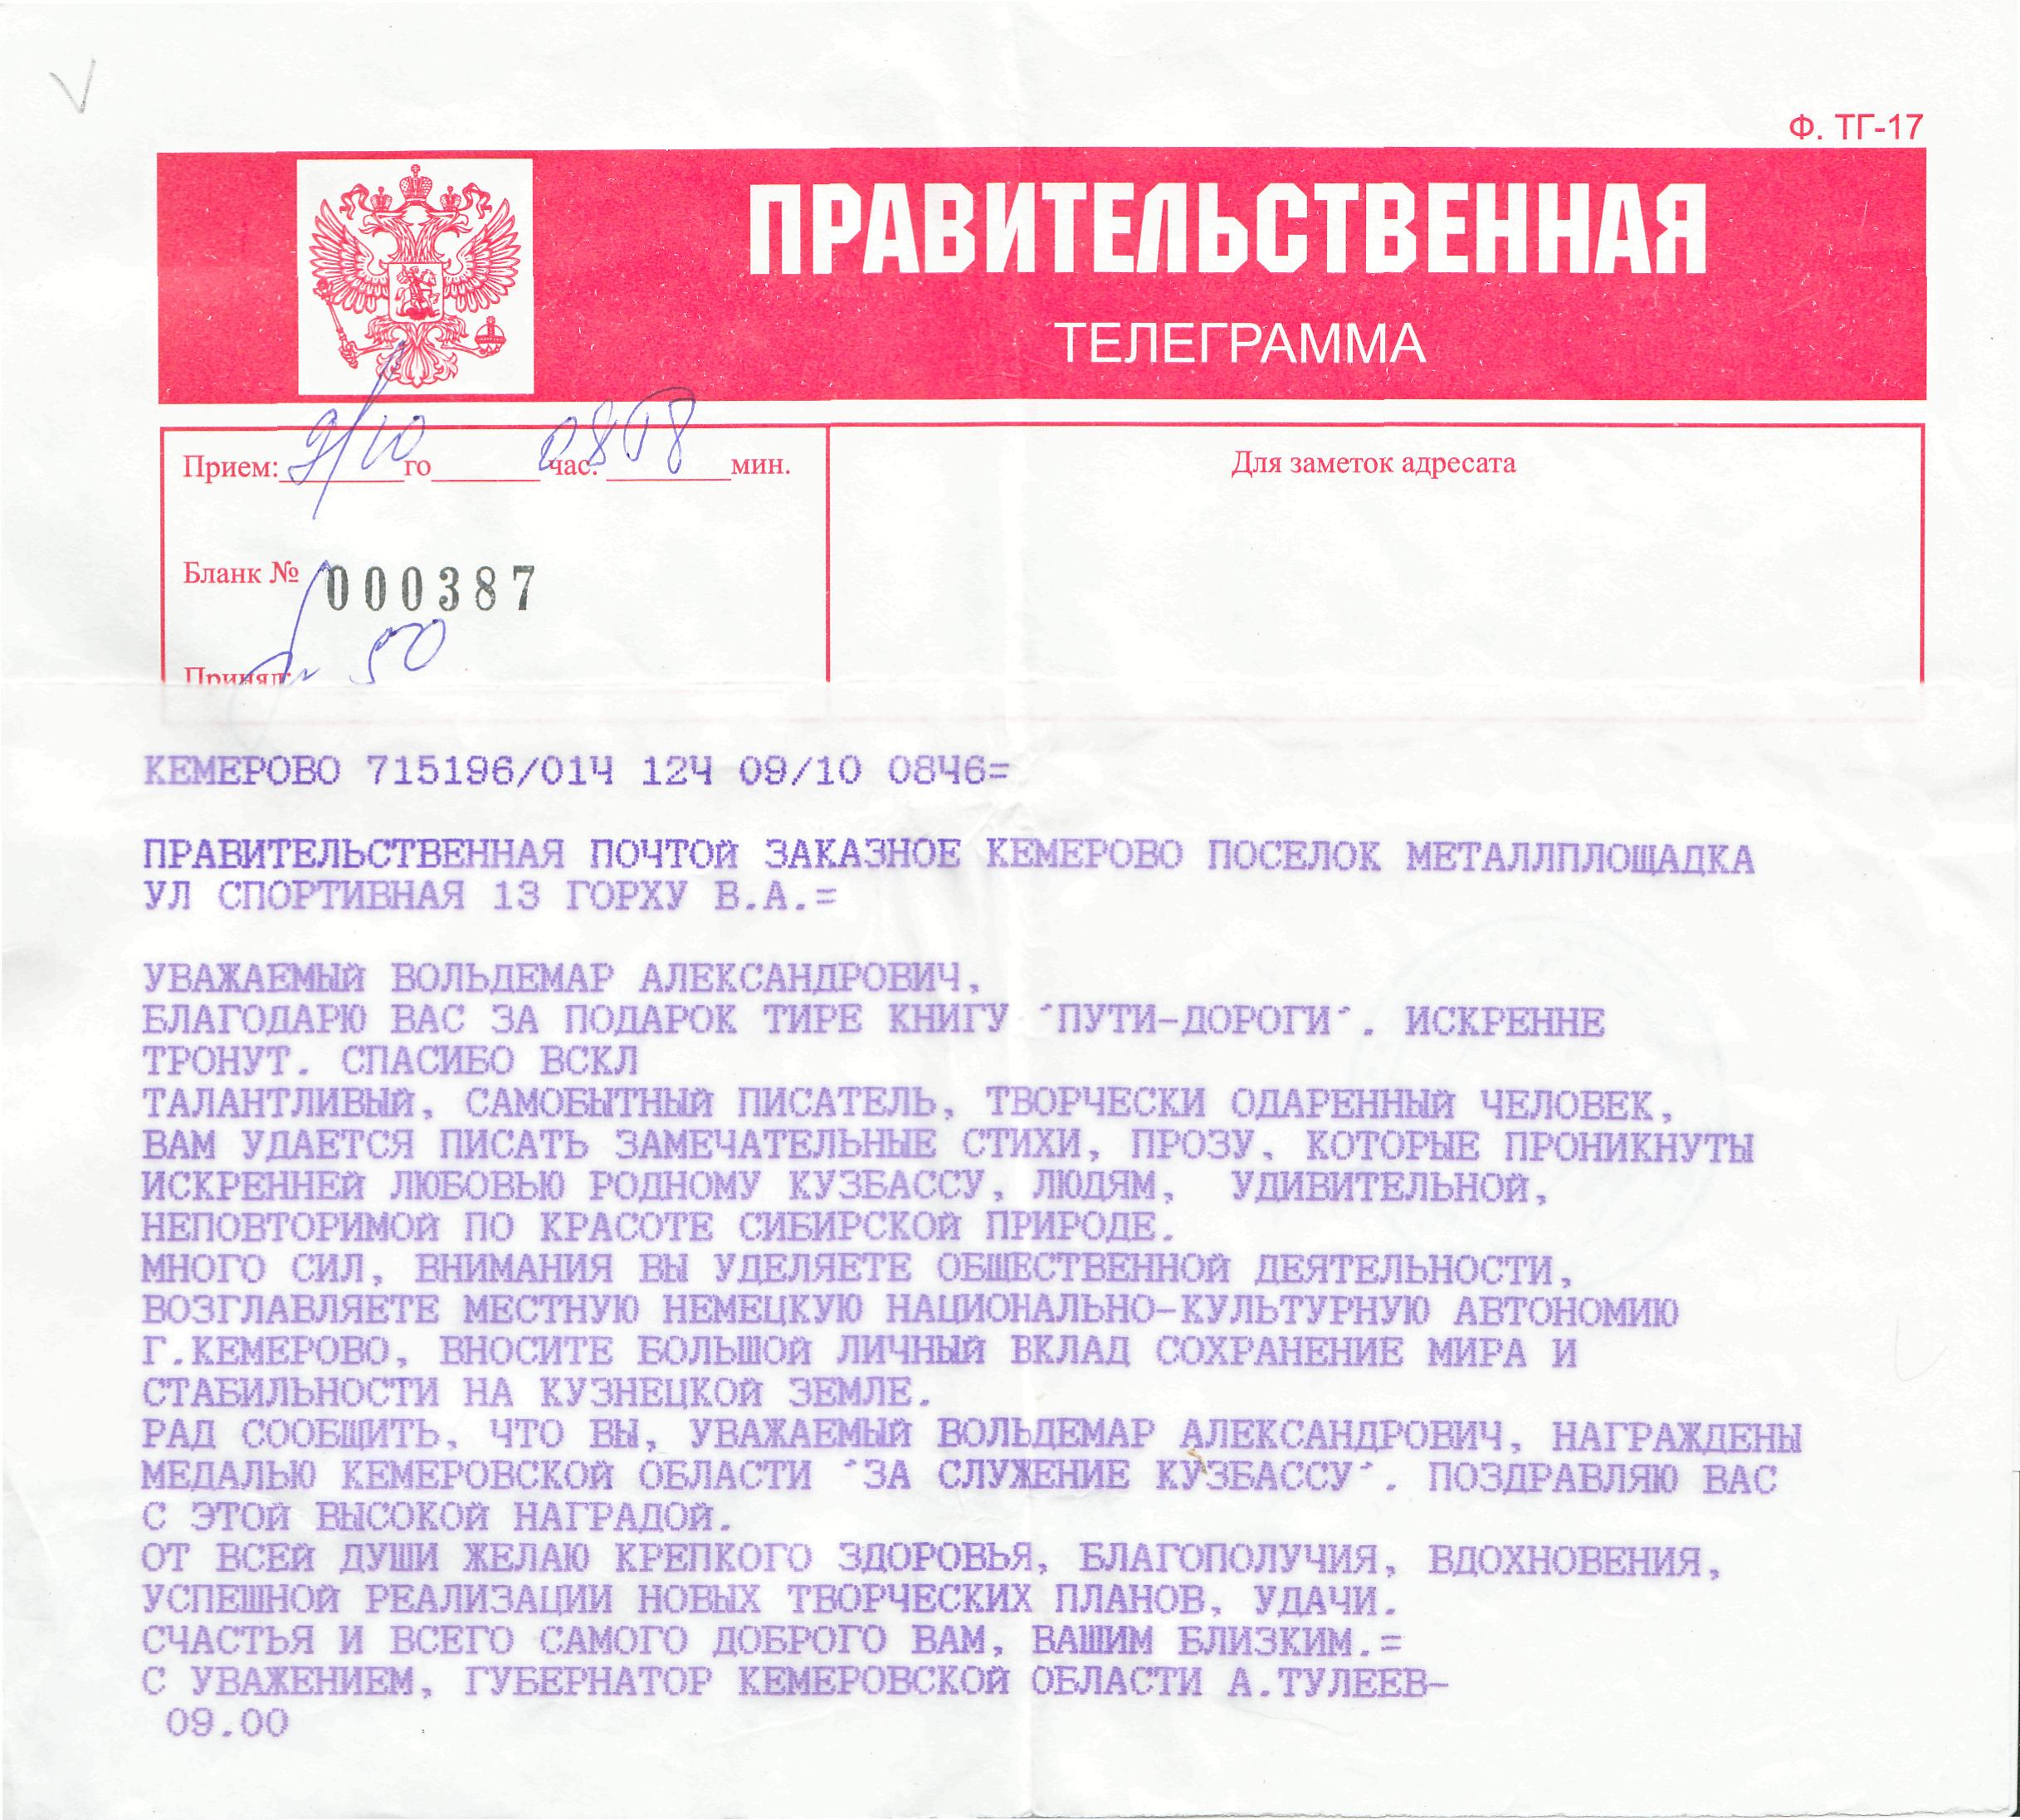 Телеграмма русское слово или нет фото 92